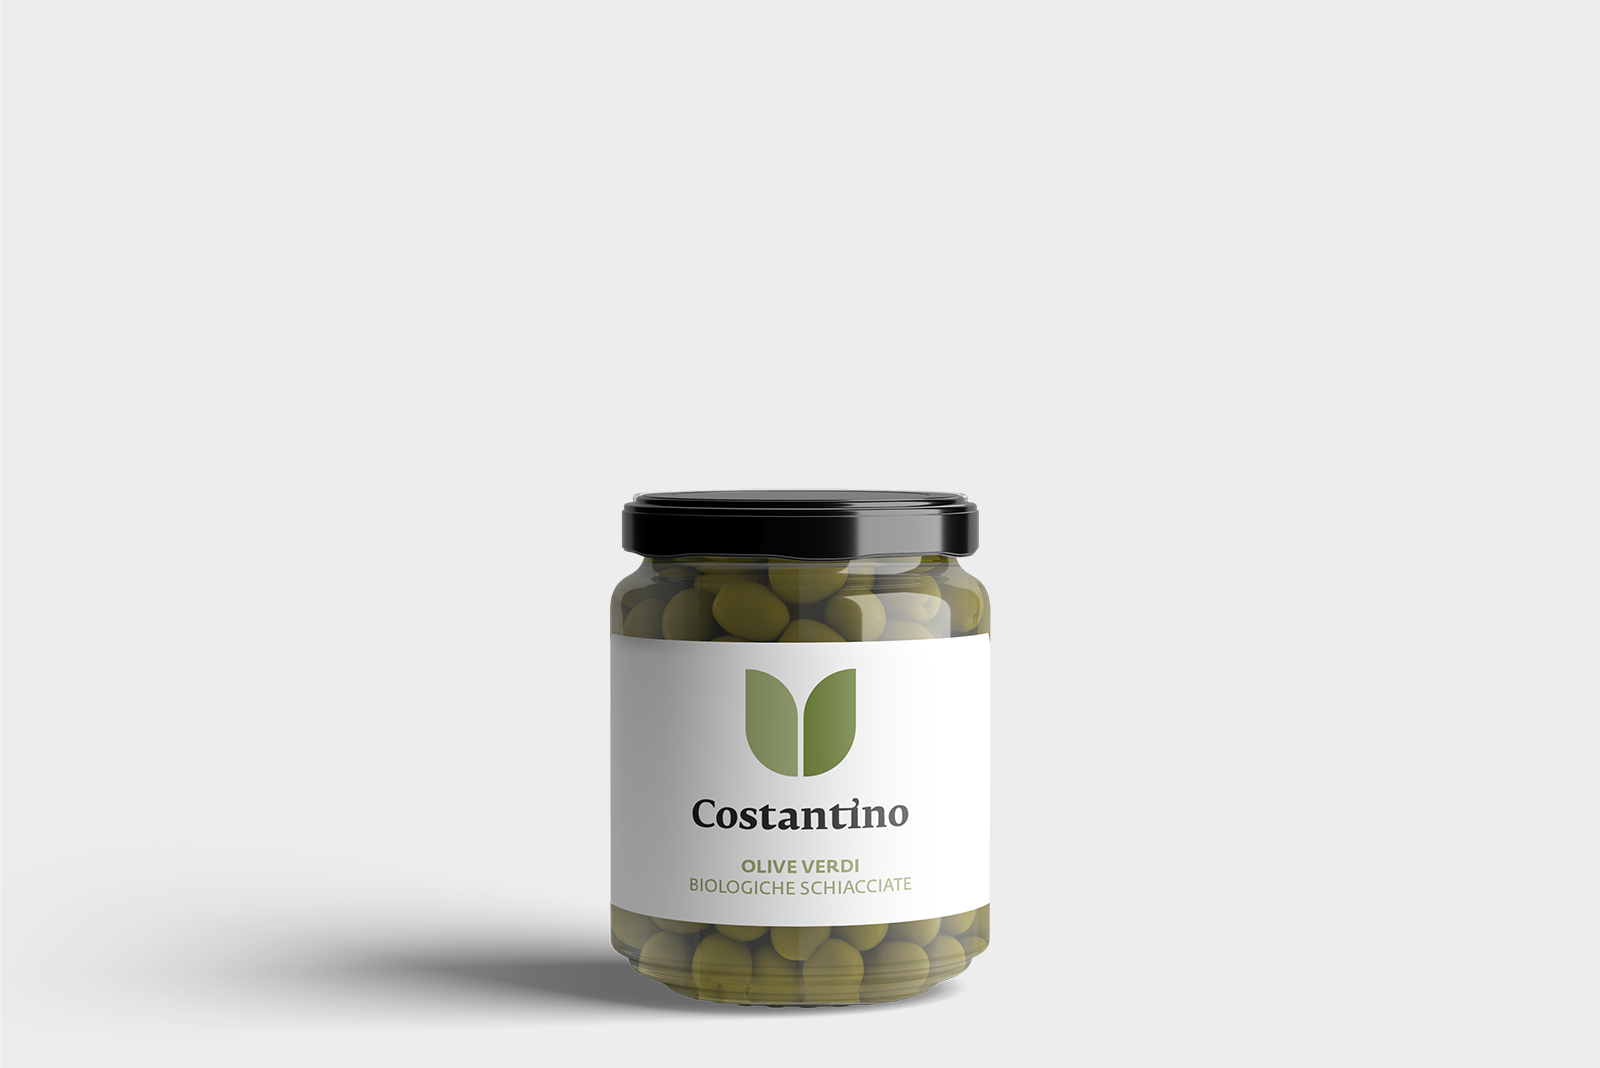 Costantino - Olive verdi biologiche schiacciate - vasetto 250g